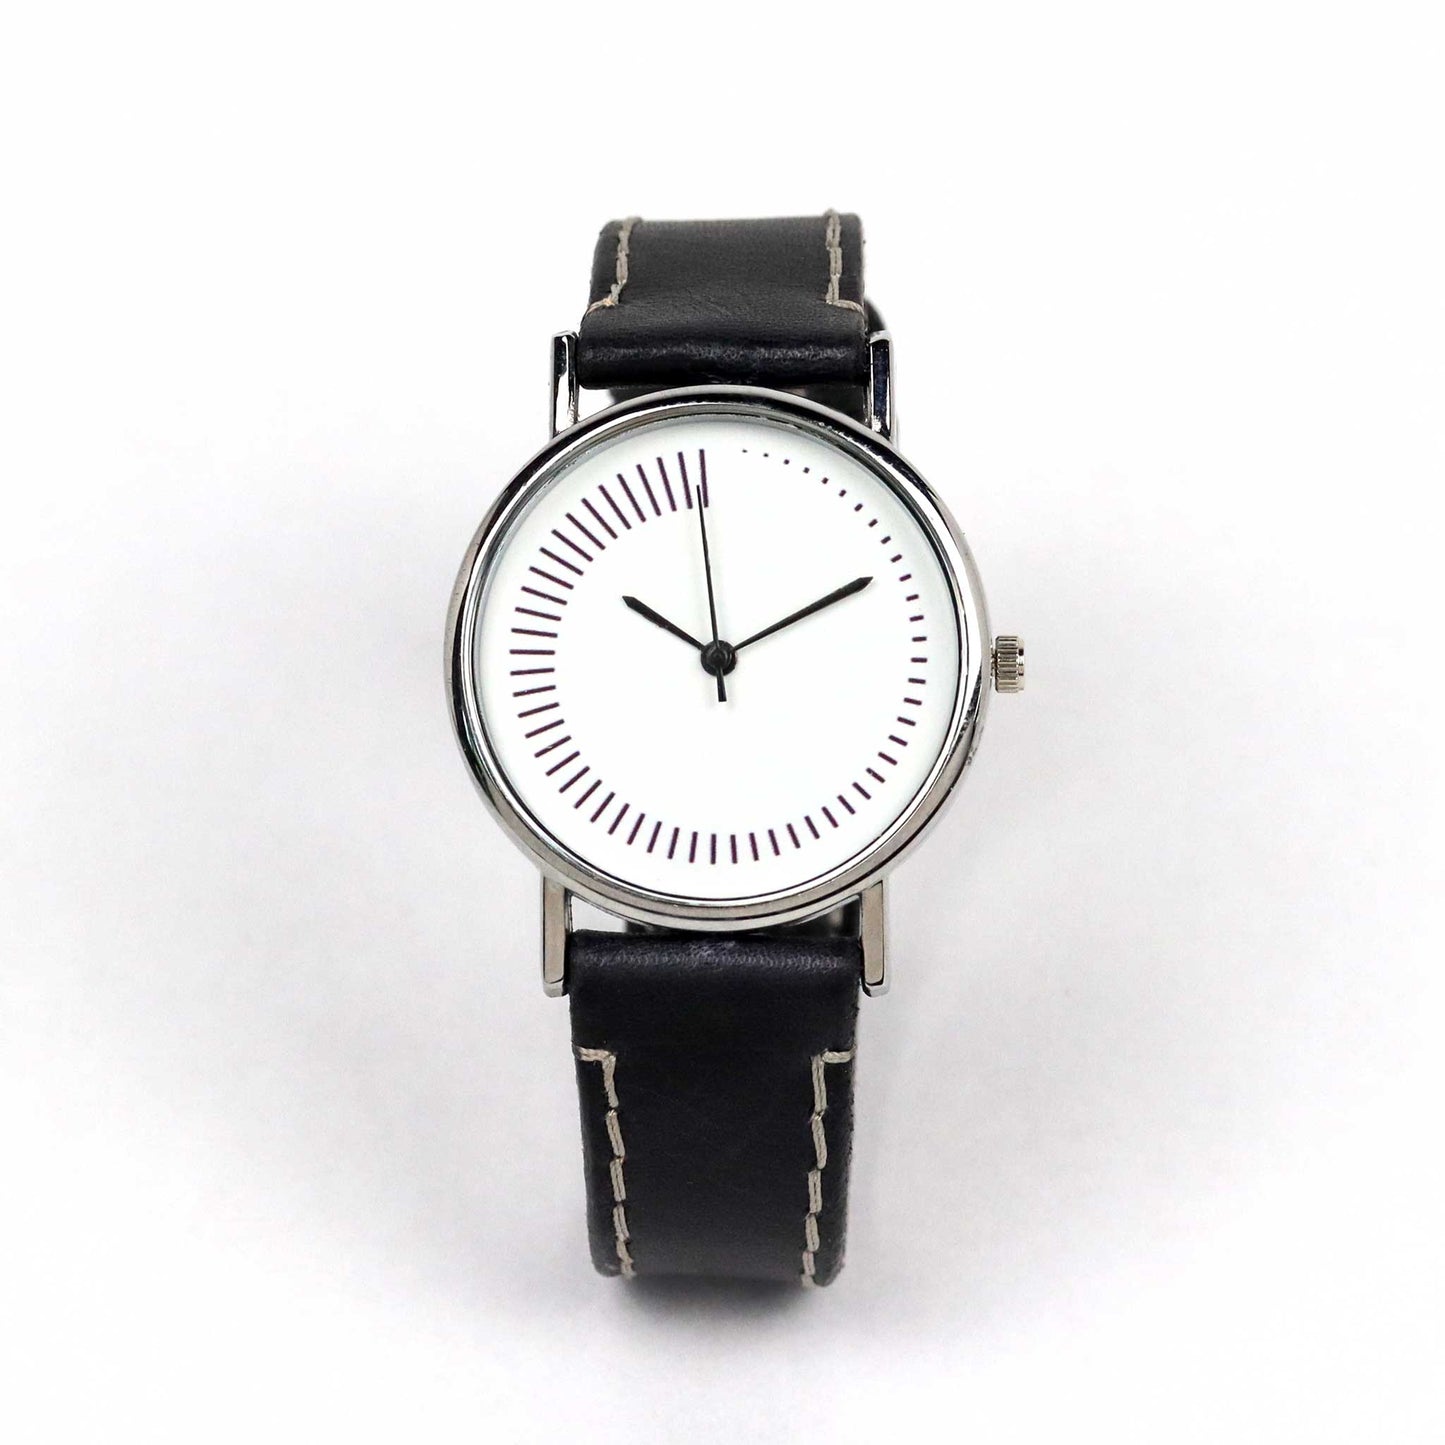 minimalist watch design with black strap